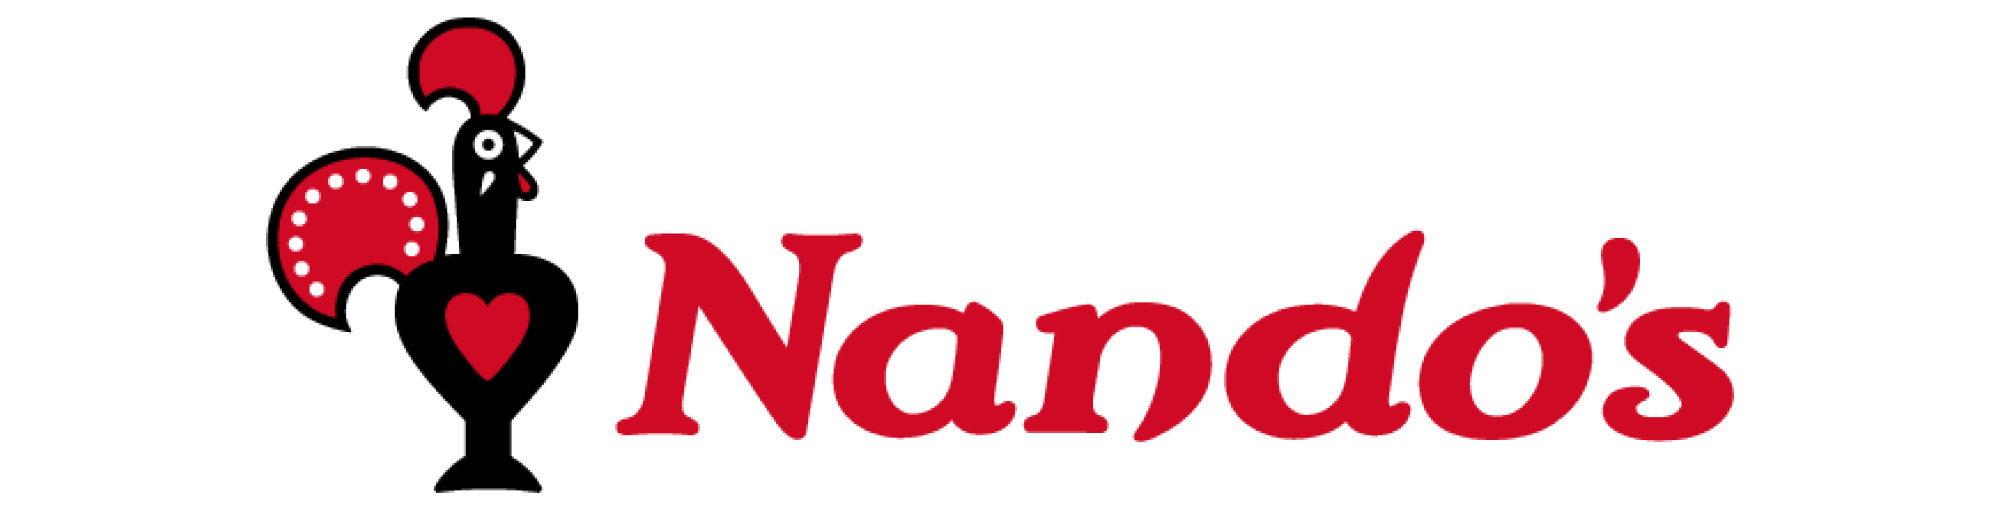 Nando's Logo icons